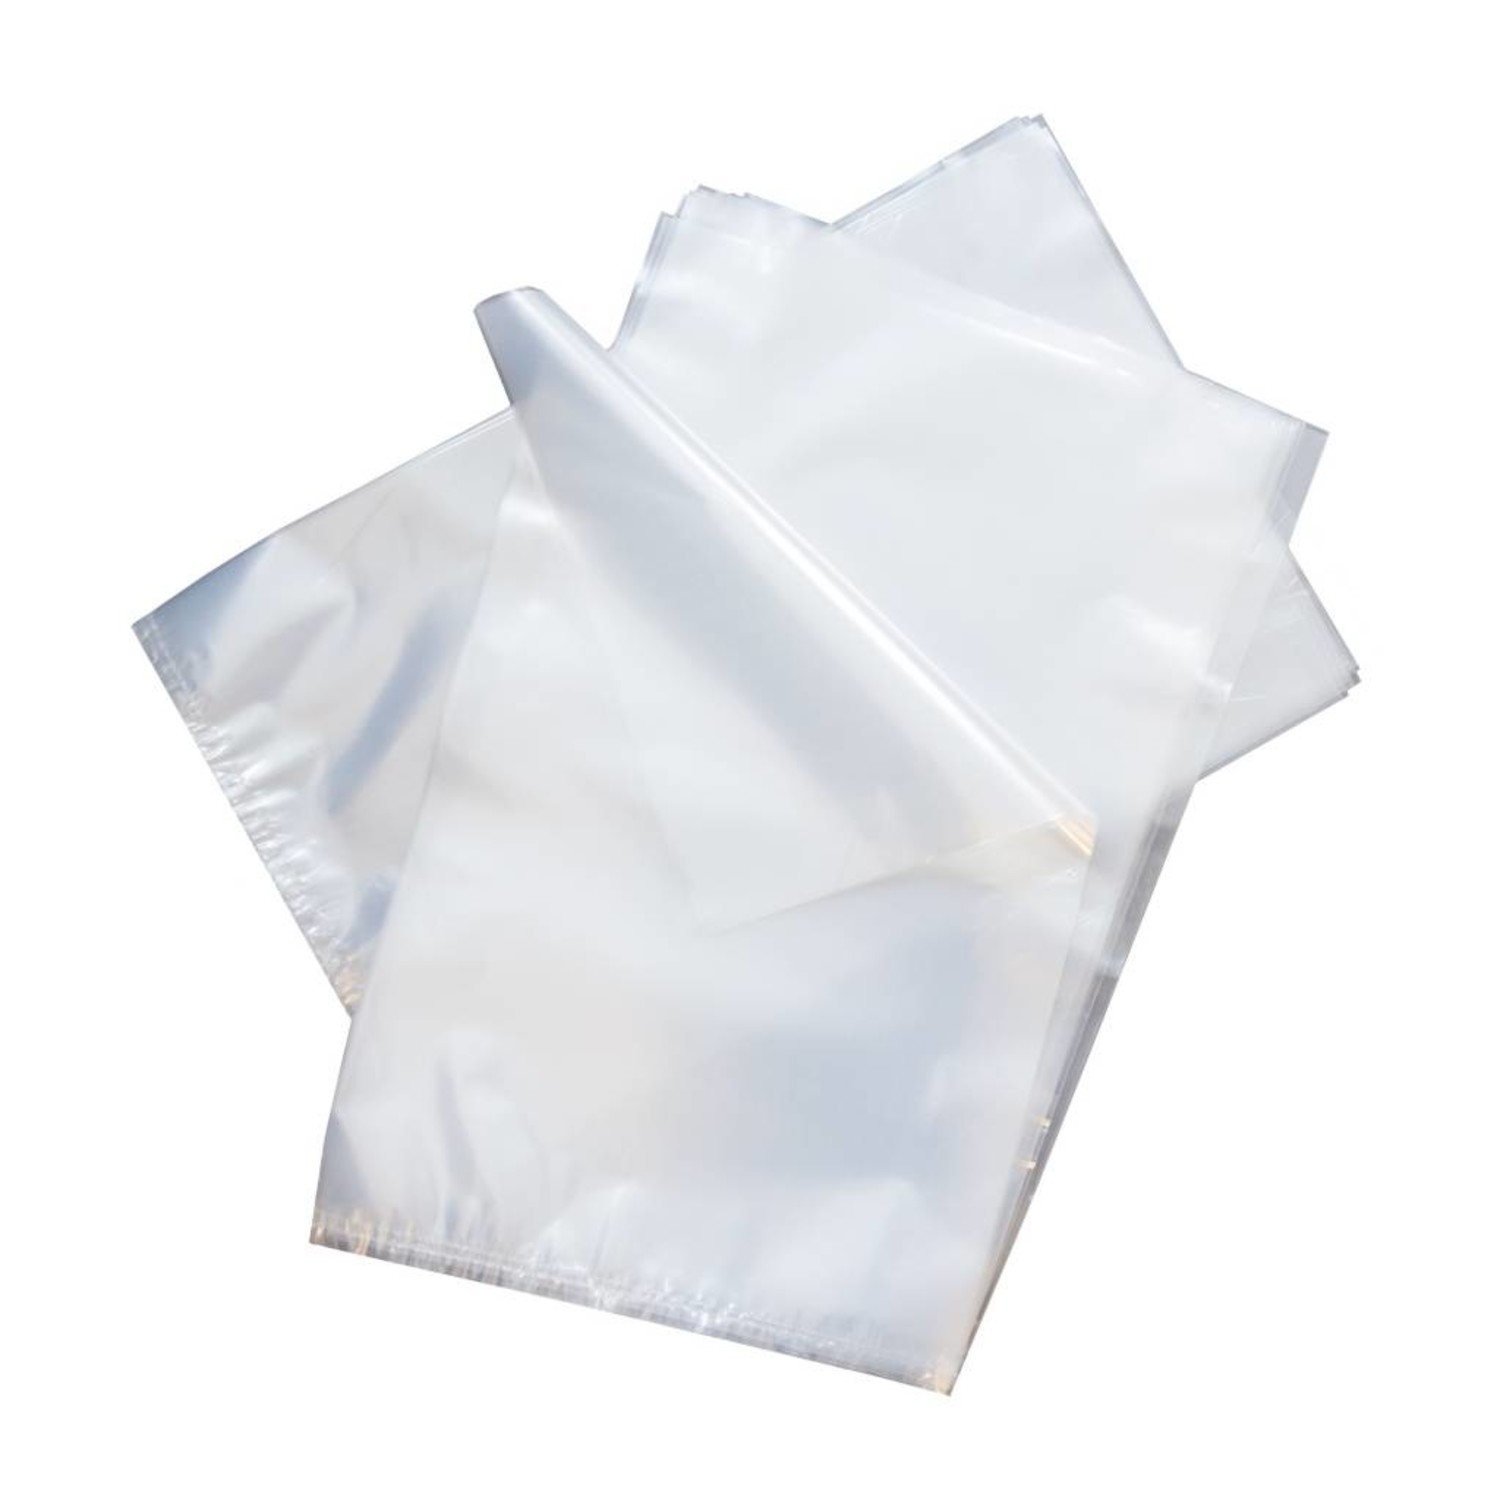 Ambtenaren aanwijzing verkoper 1000x plastic zakken LDPE 40x60cm 25my - Rotim Verpakkingen: you carry, we  care!